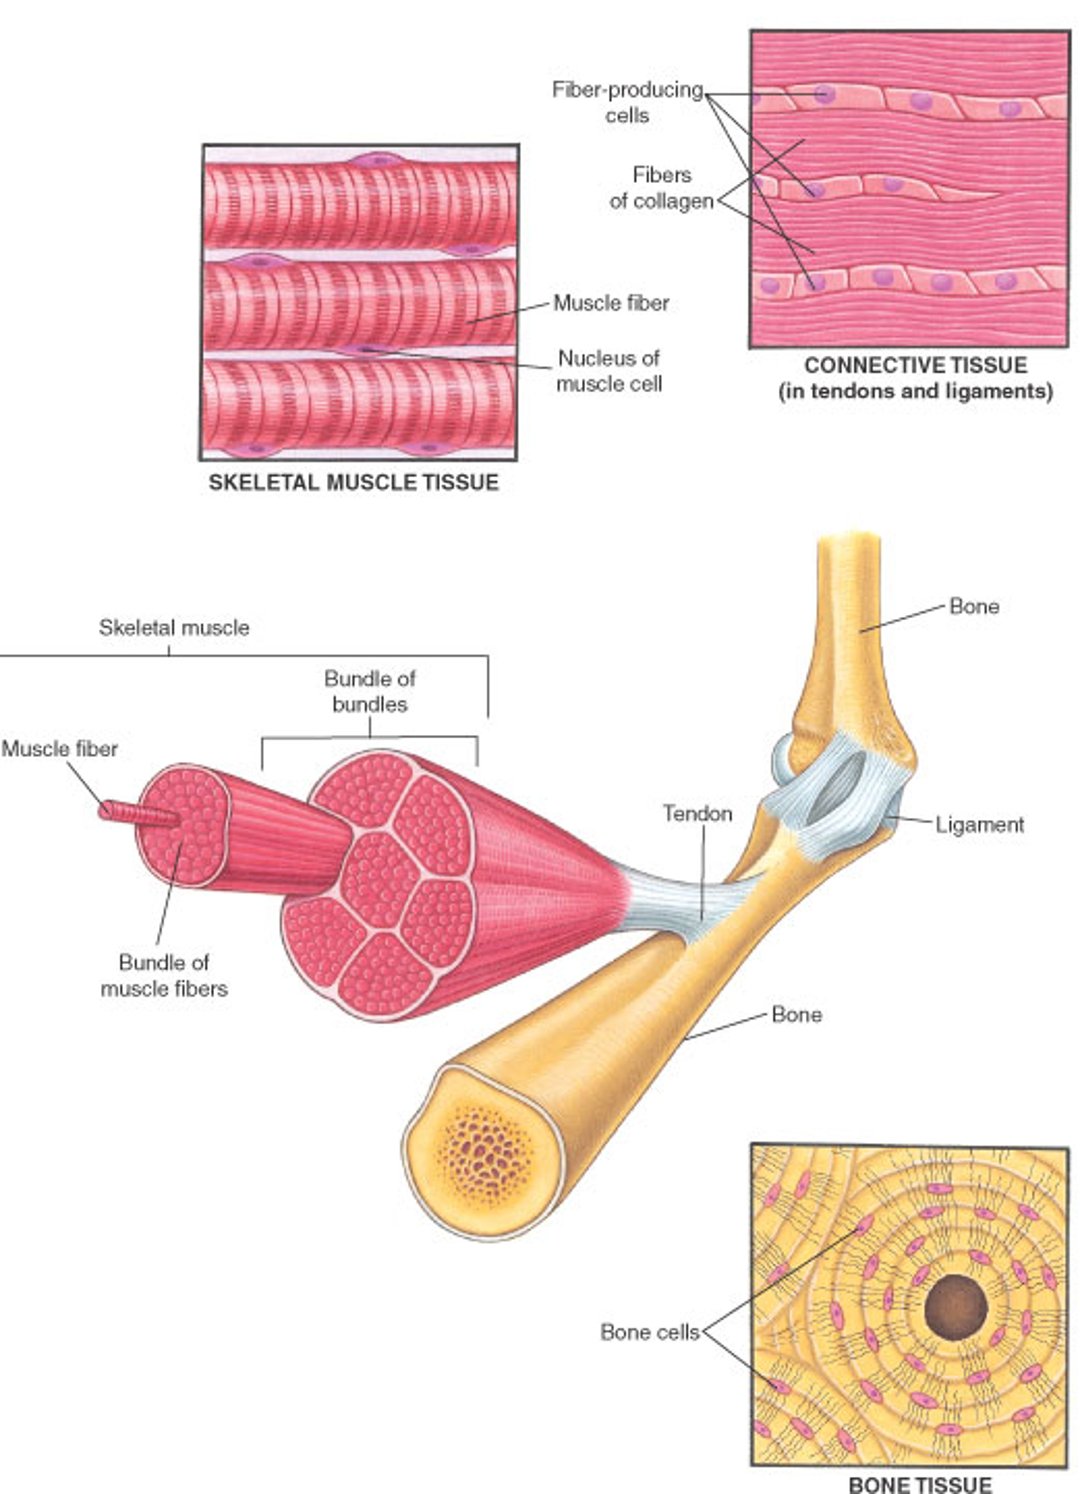 मस्कुलोस्केलेटल सिस्टम की मांसपेशियाँ और दूसरे ऊतक